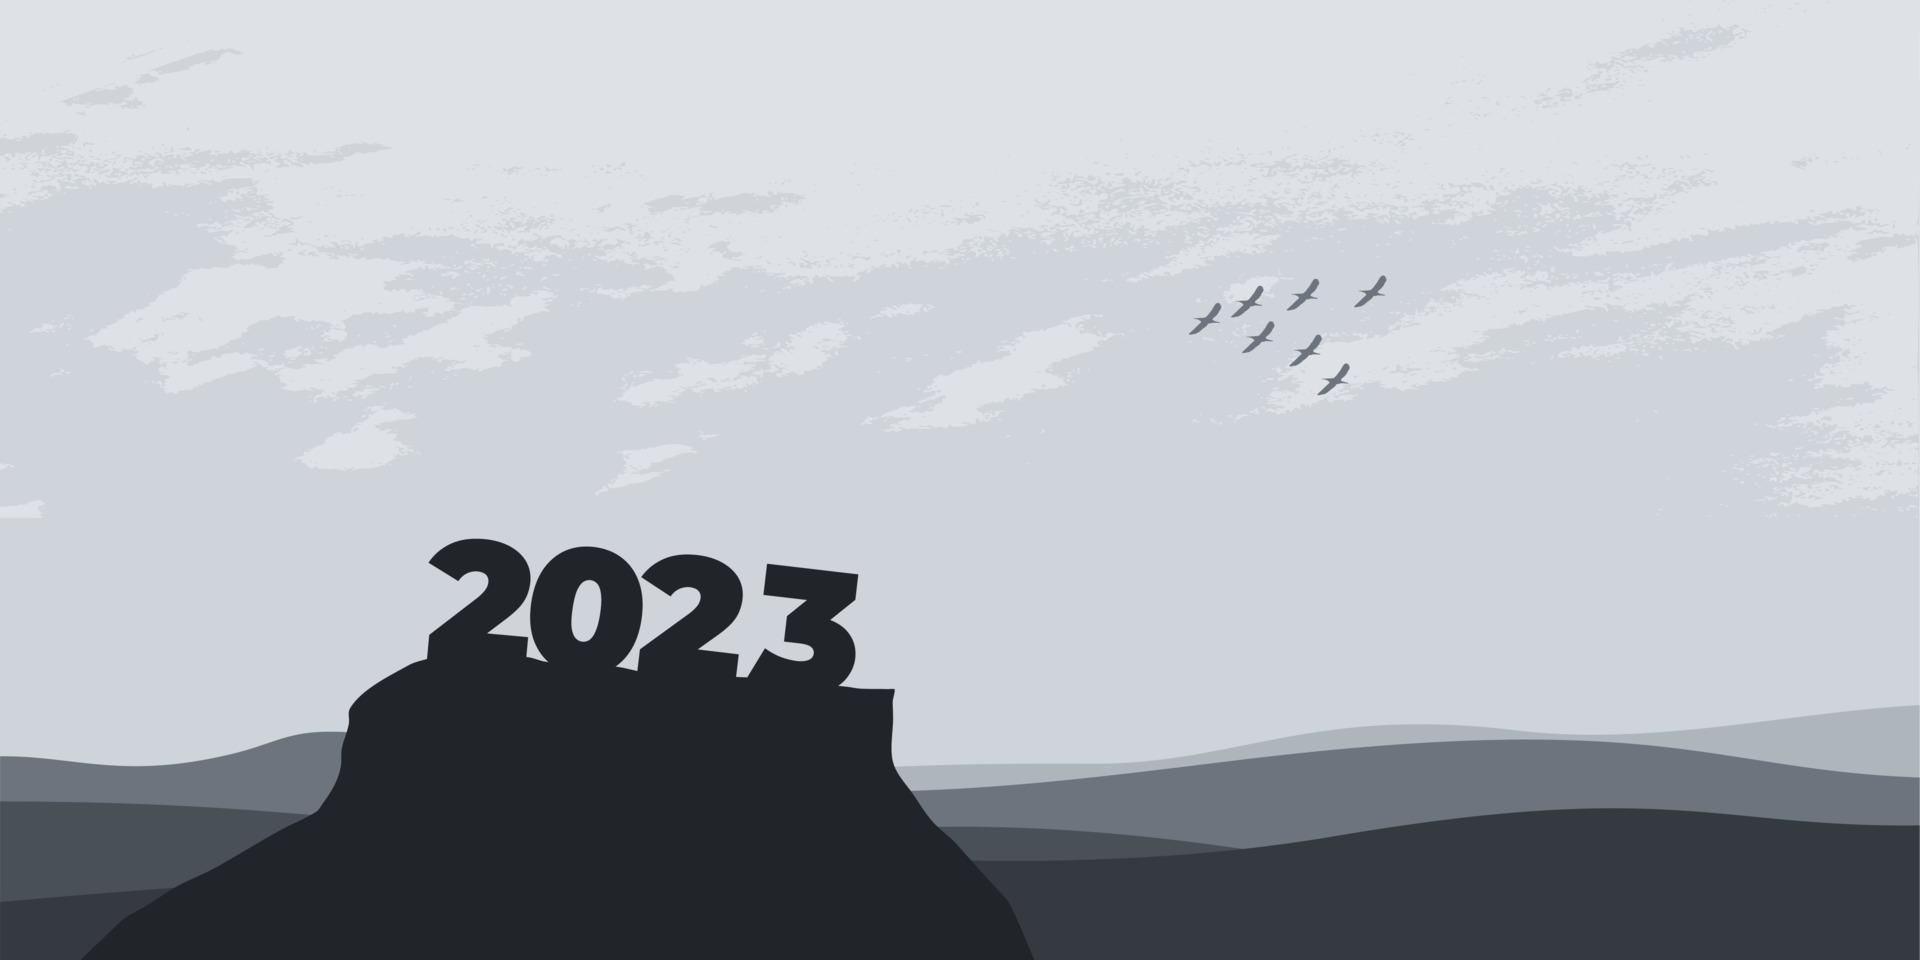 contento nuovo anno 2023 con grande silhouette lettere su il montagna con un' bellissimo tramonto per successo concetto. nuovo anno concetto vettore